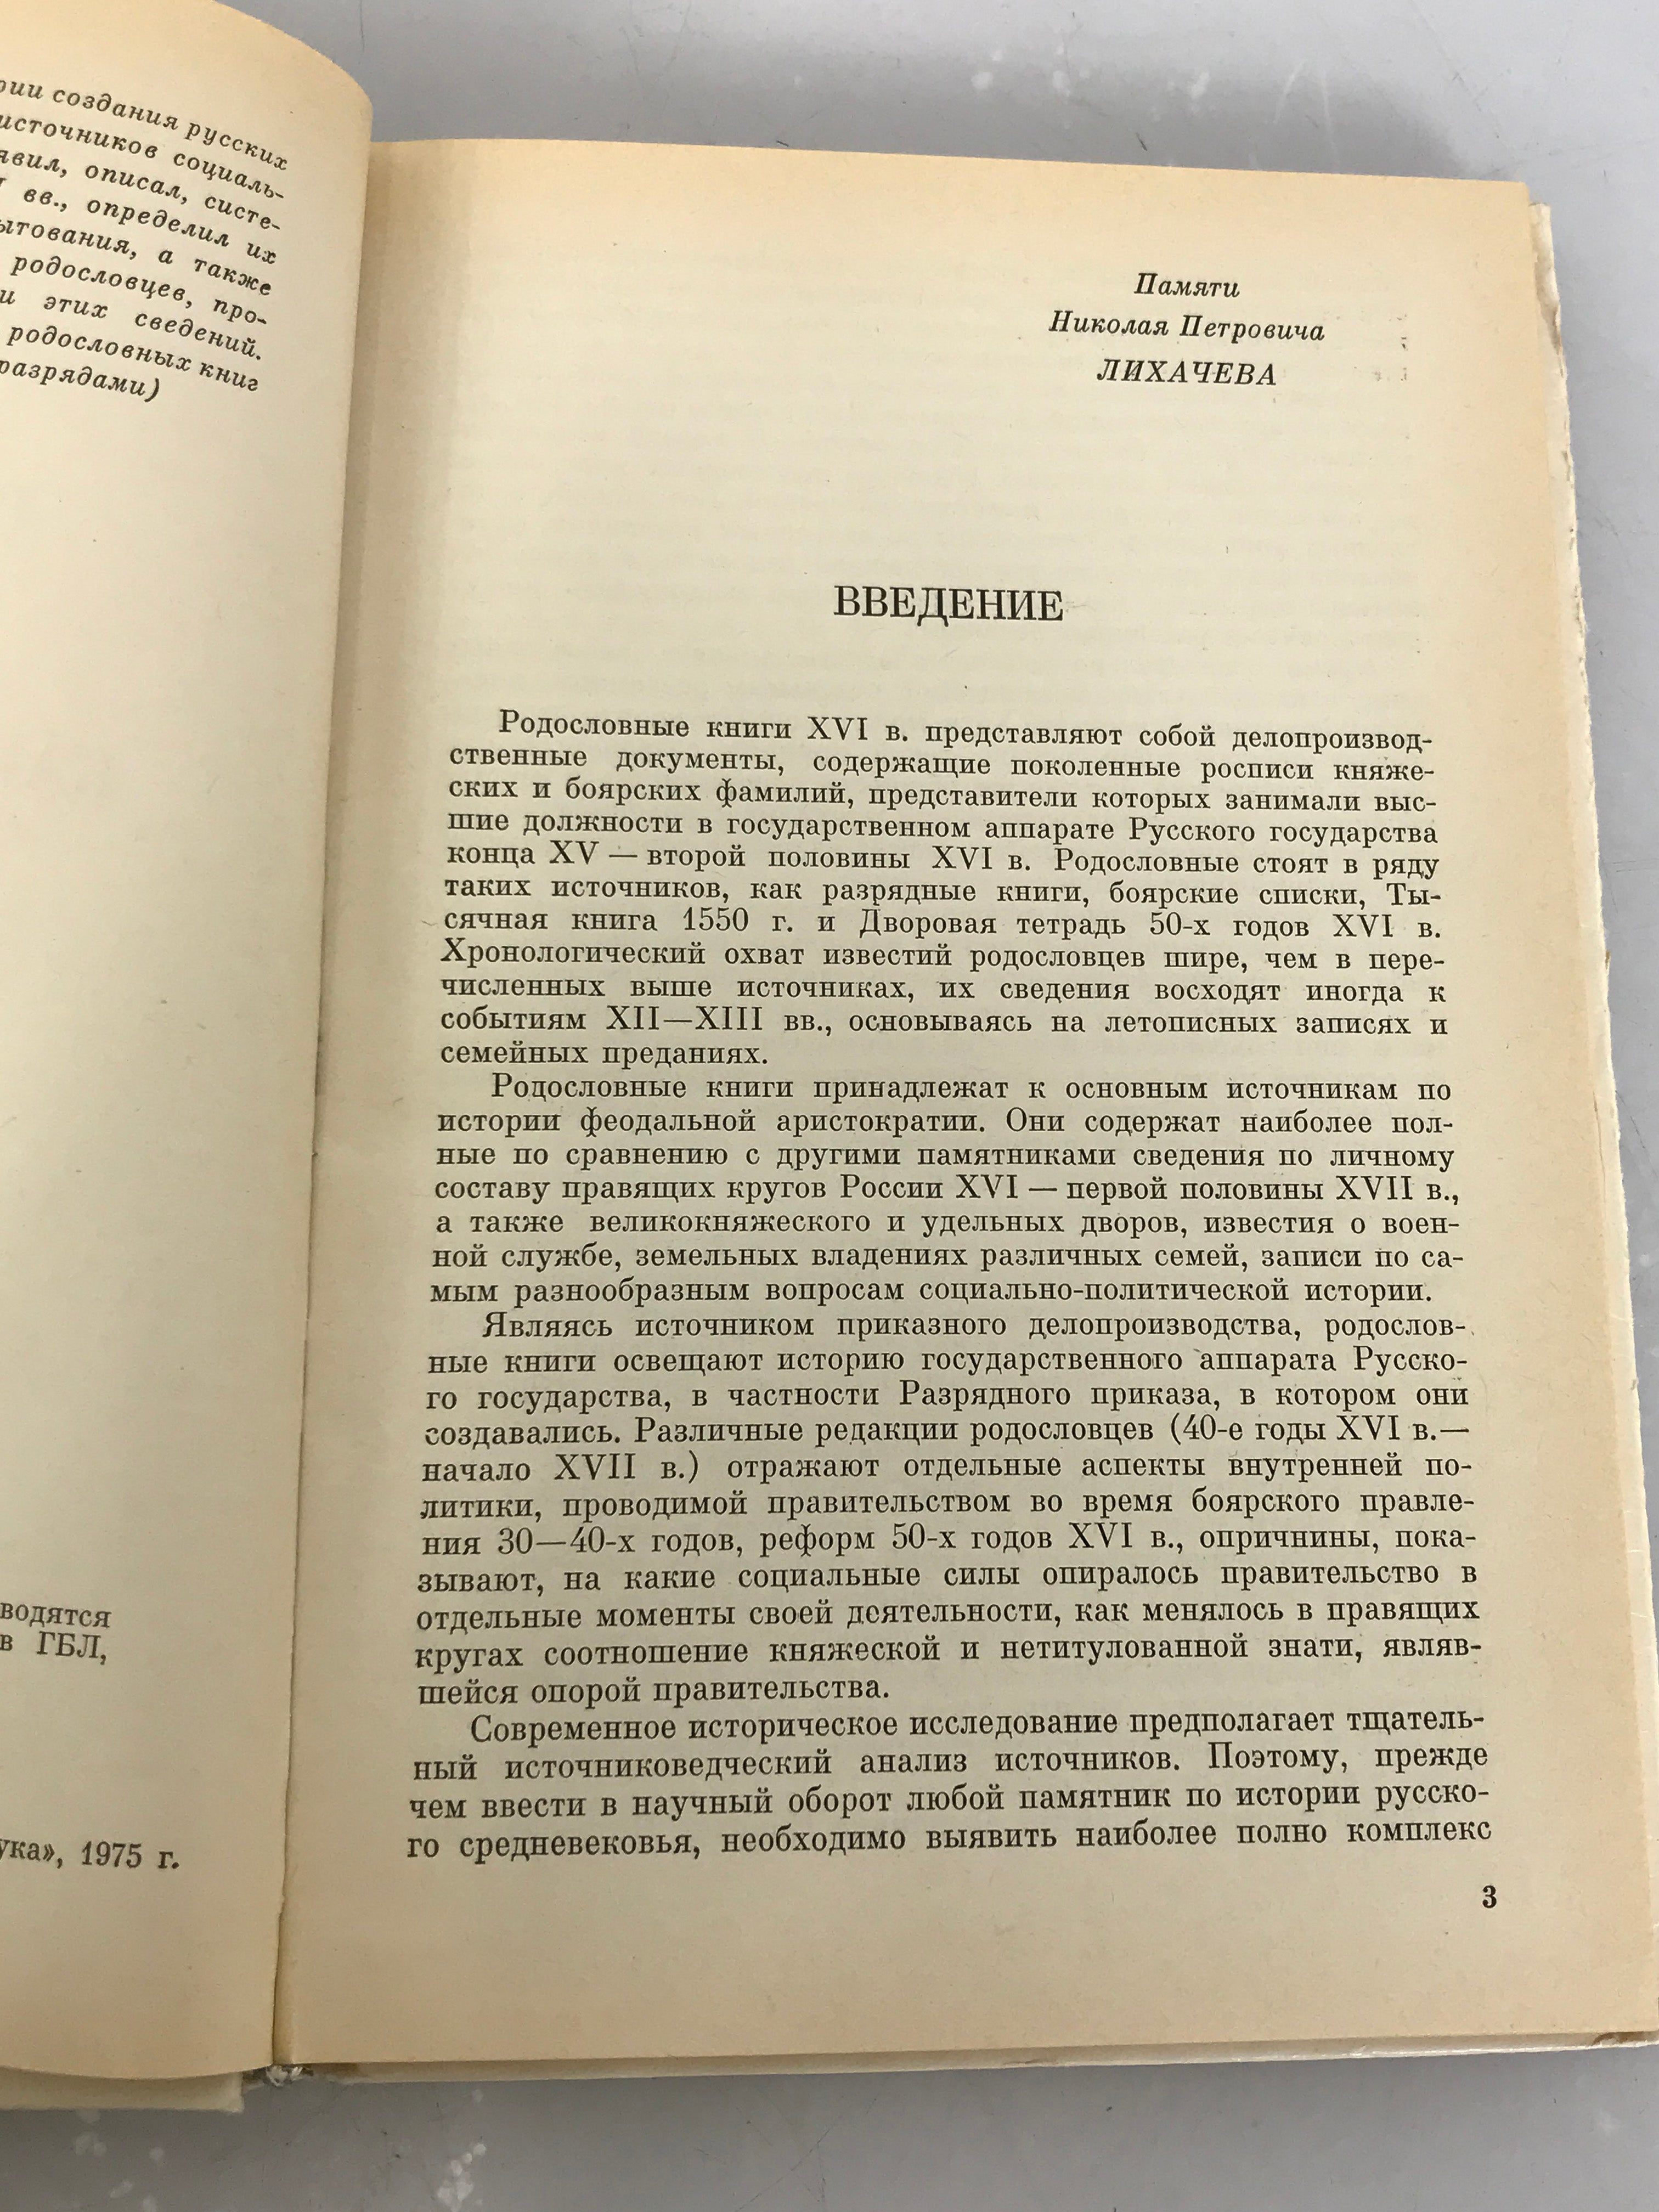 Lot of 3 Russian Language Books 1963-1977 HC